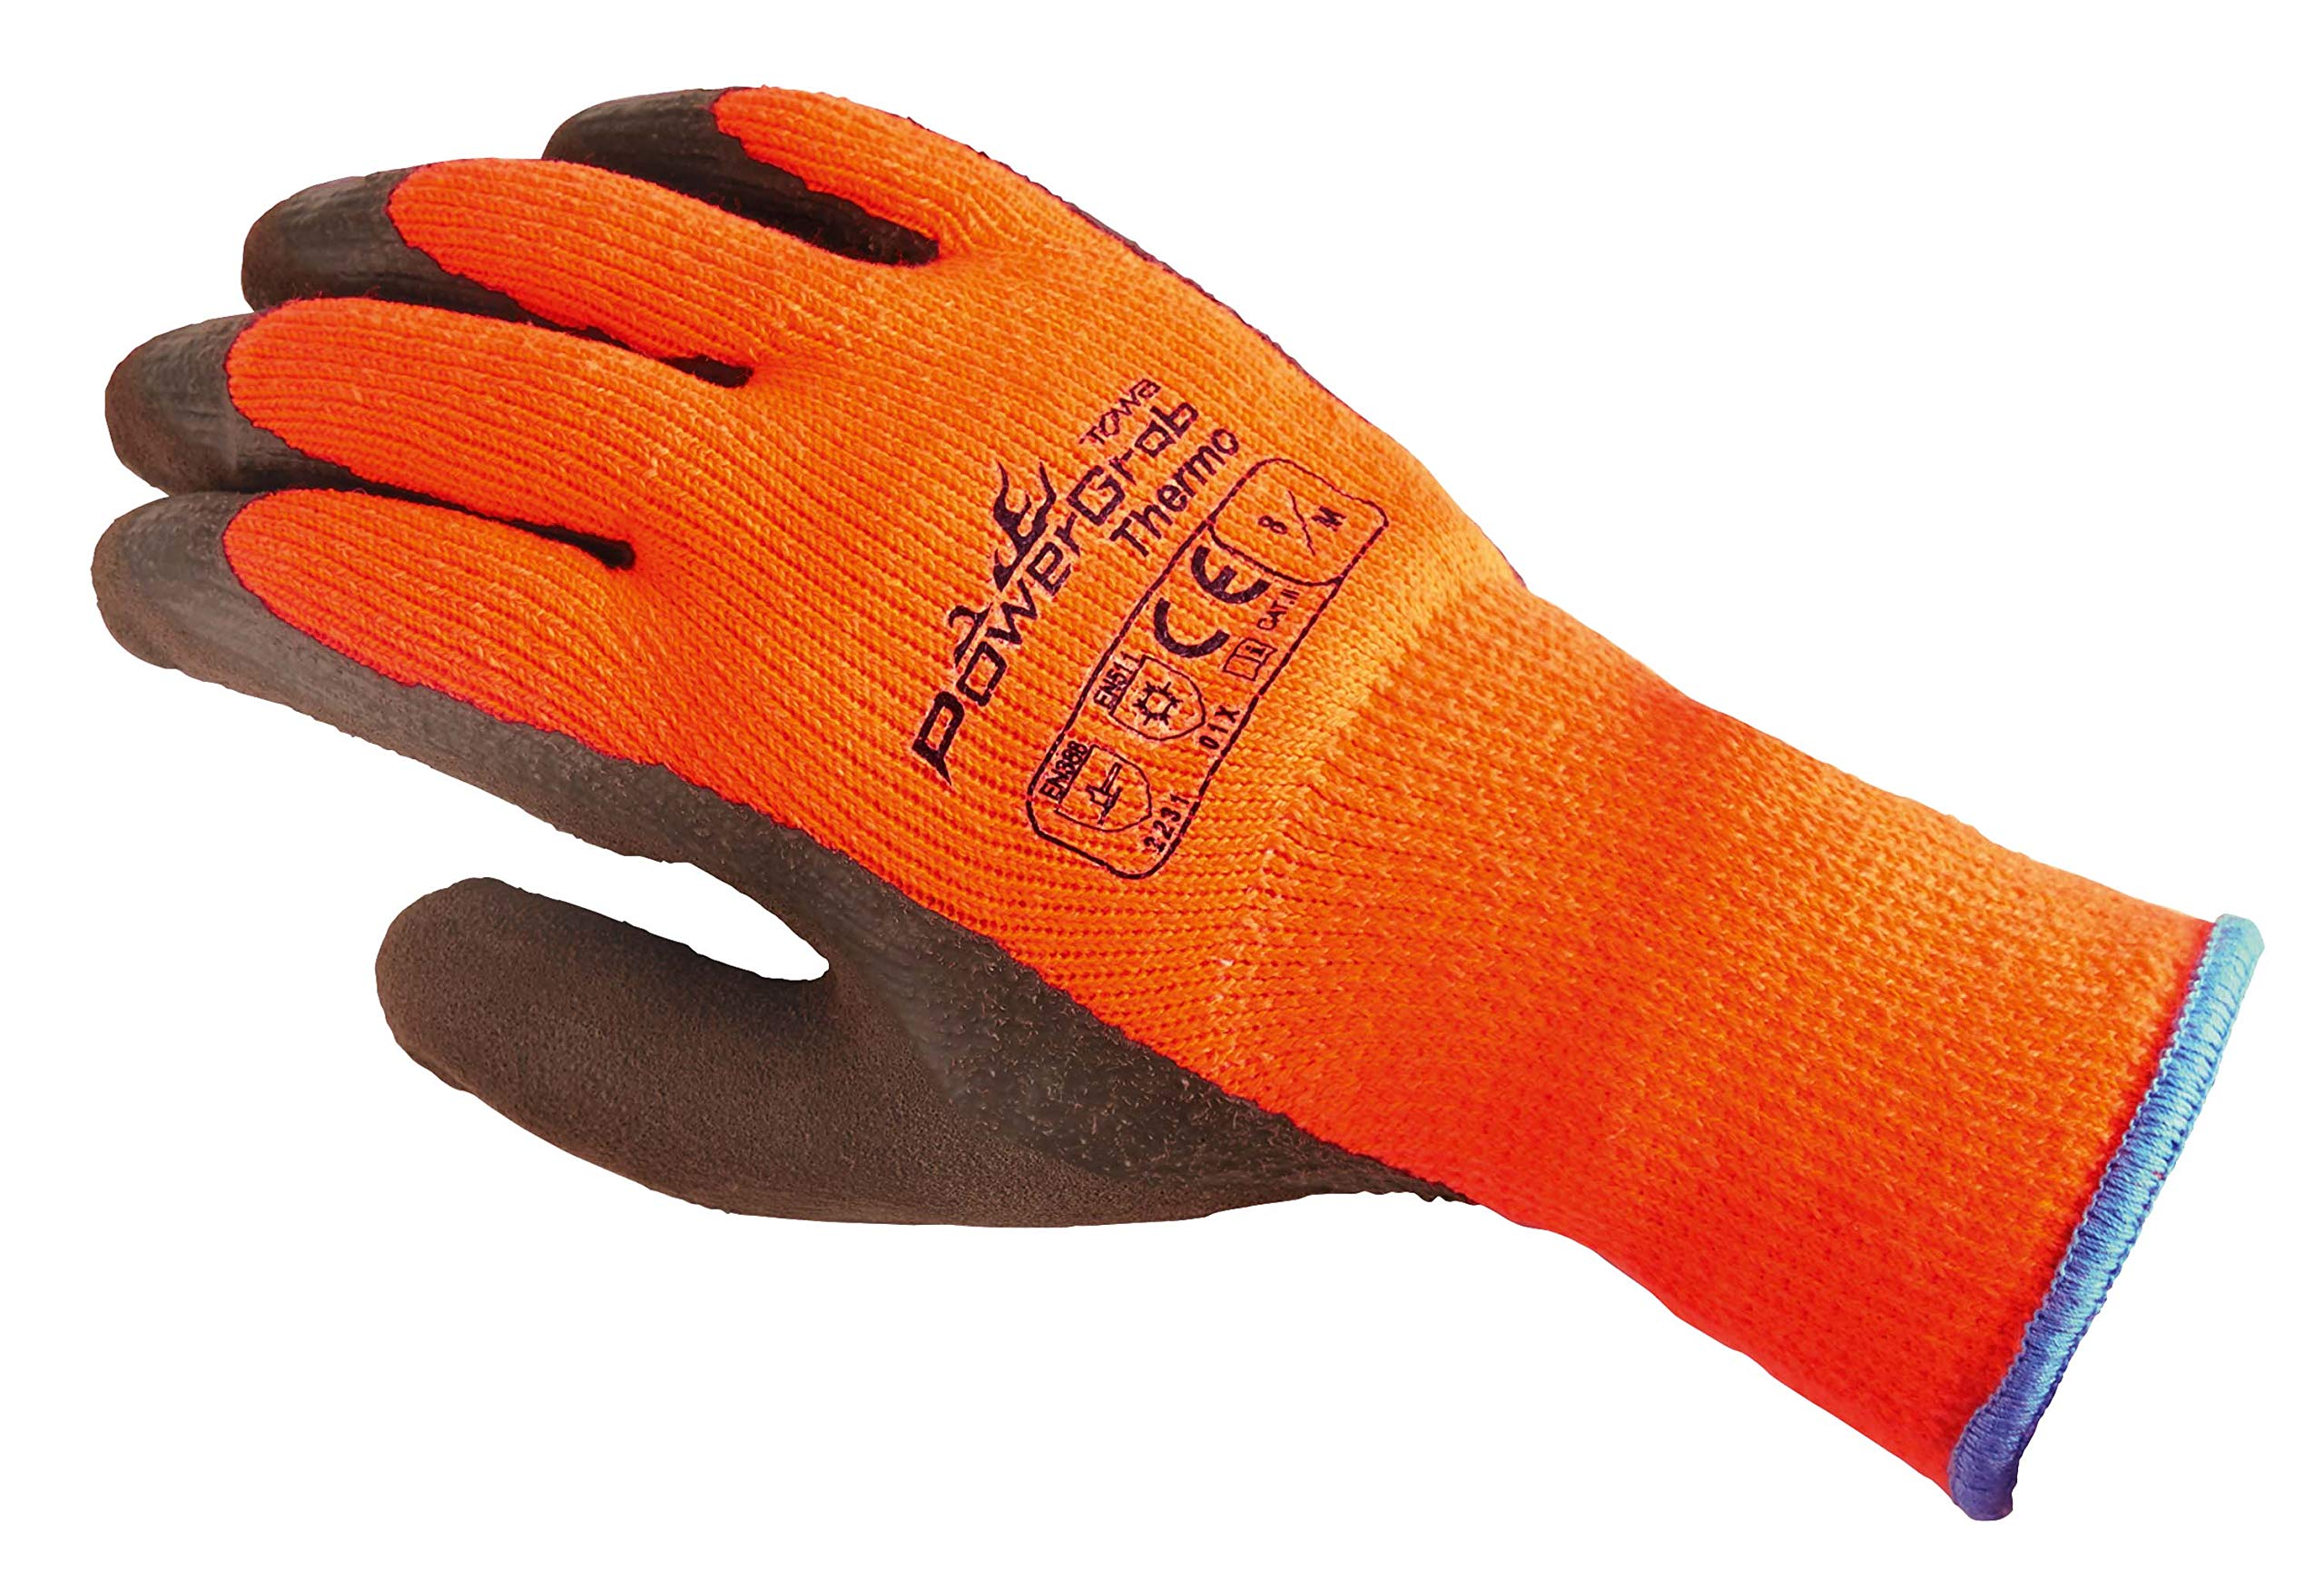 TOWA (6 Paar) Handschuhe Winterhandschuhe PowerGrab Thermo 6 x orange/braun 10